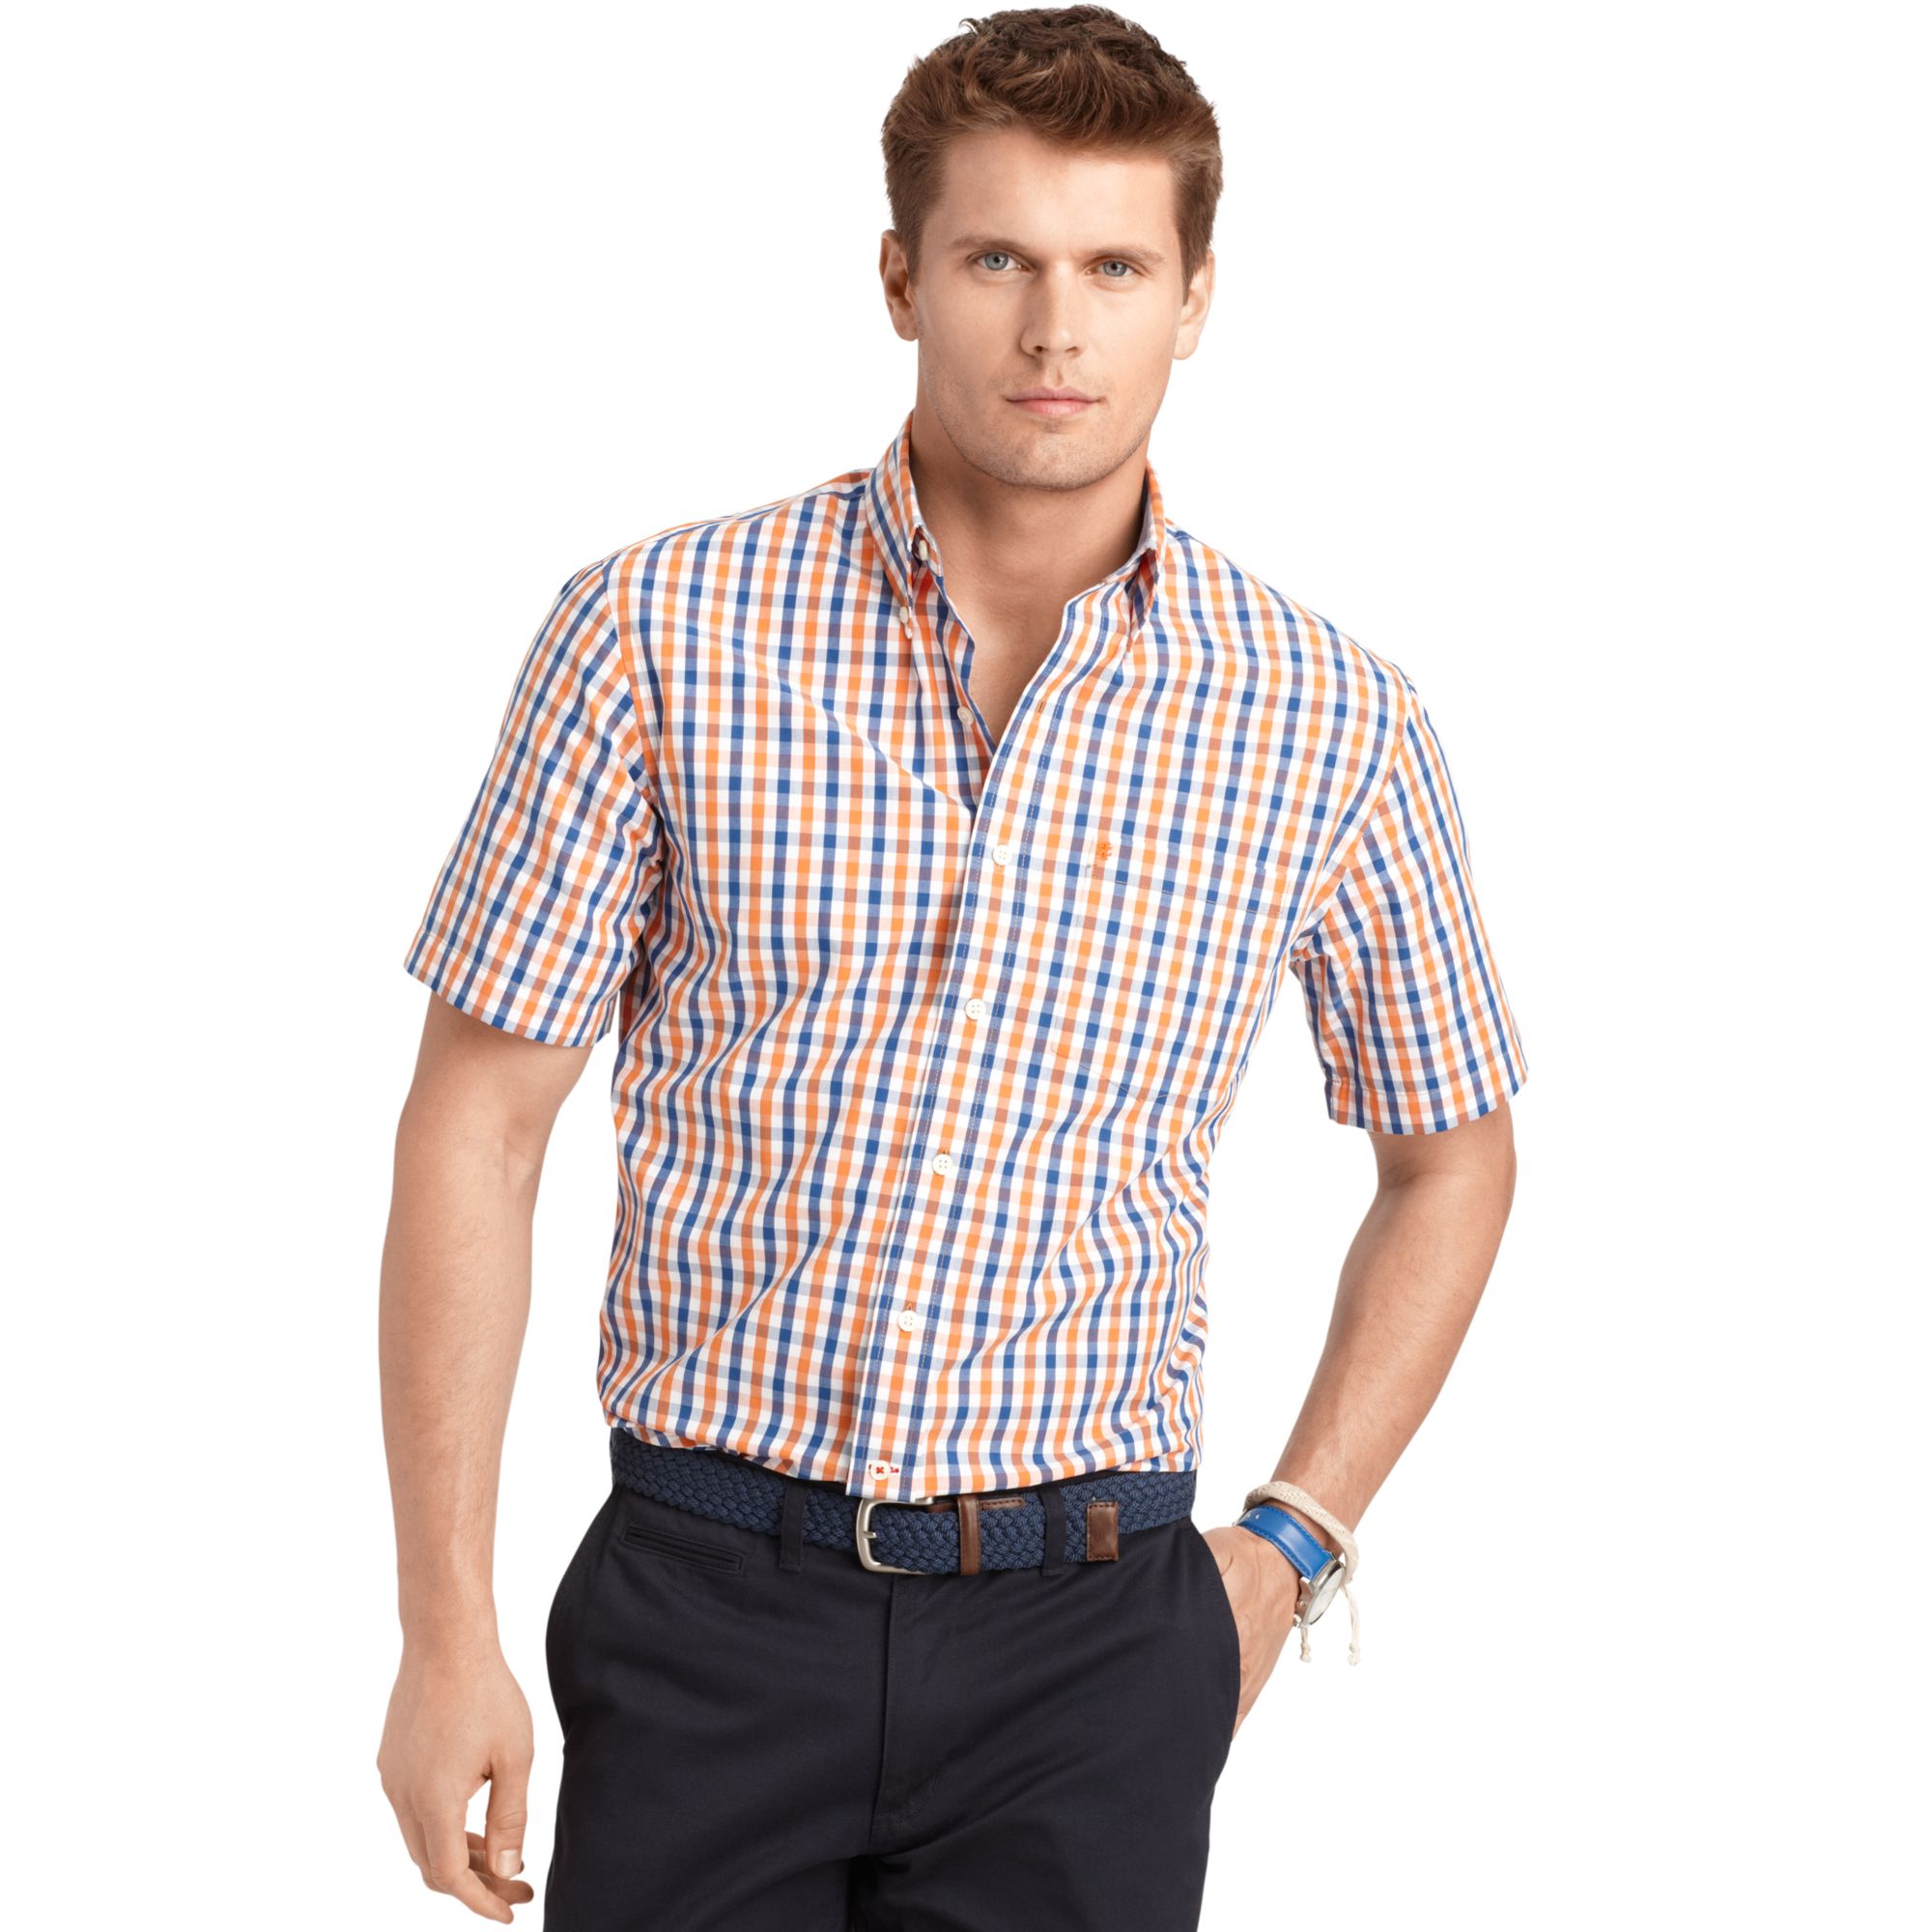 Lyst - Izod Shirt Short Sleeve Gingham Check Shirt for Men